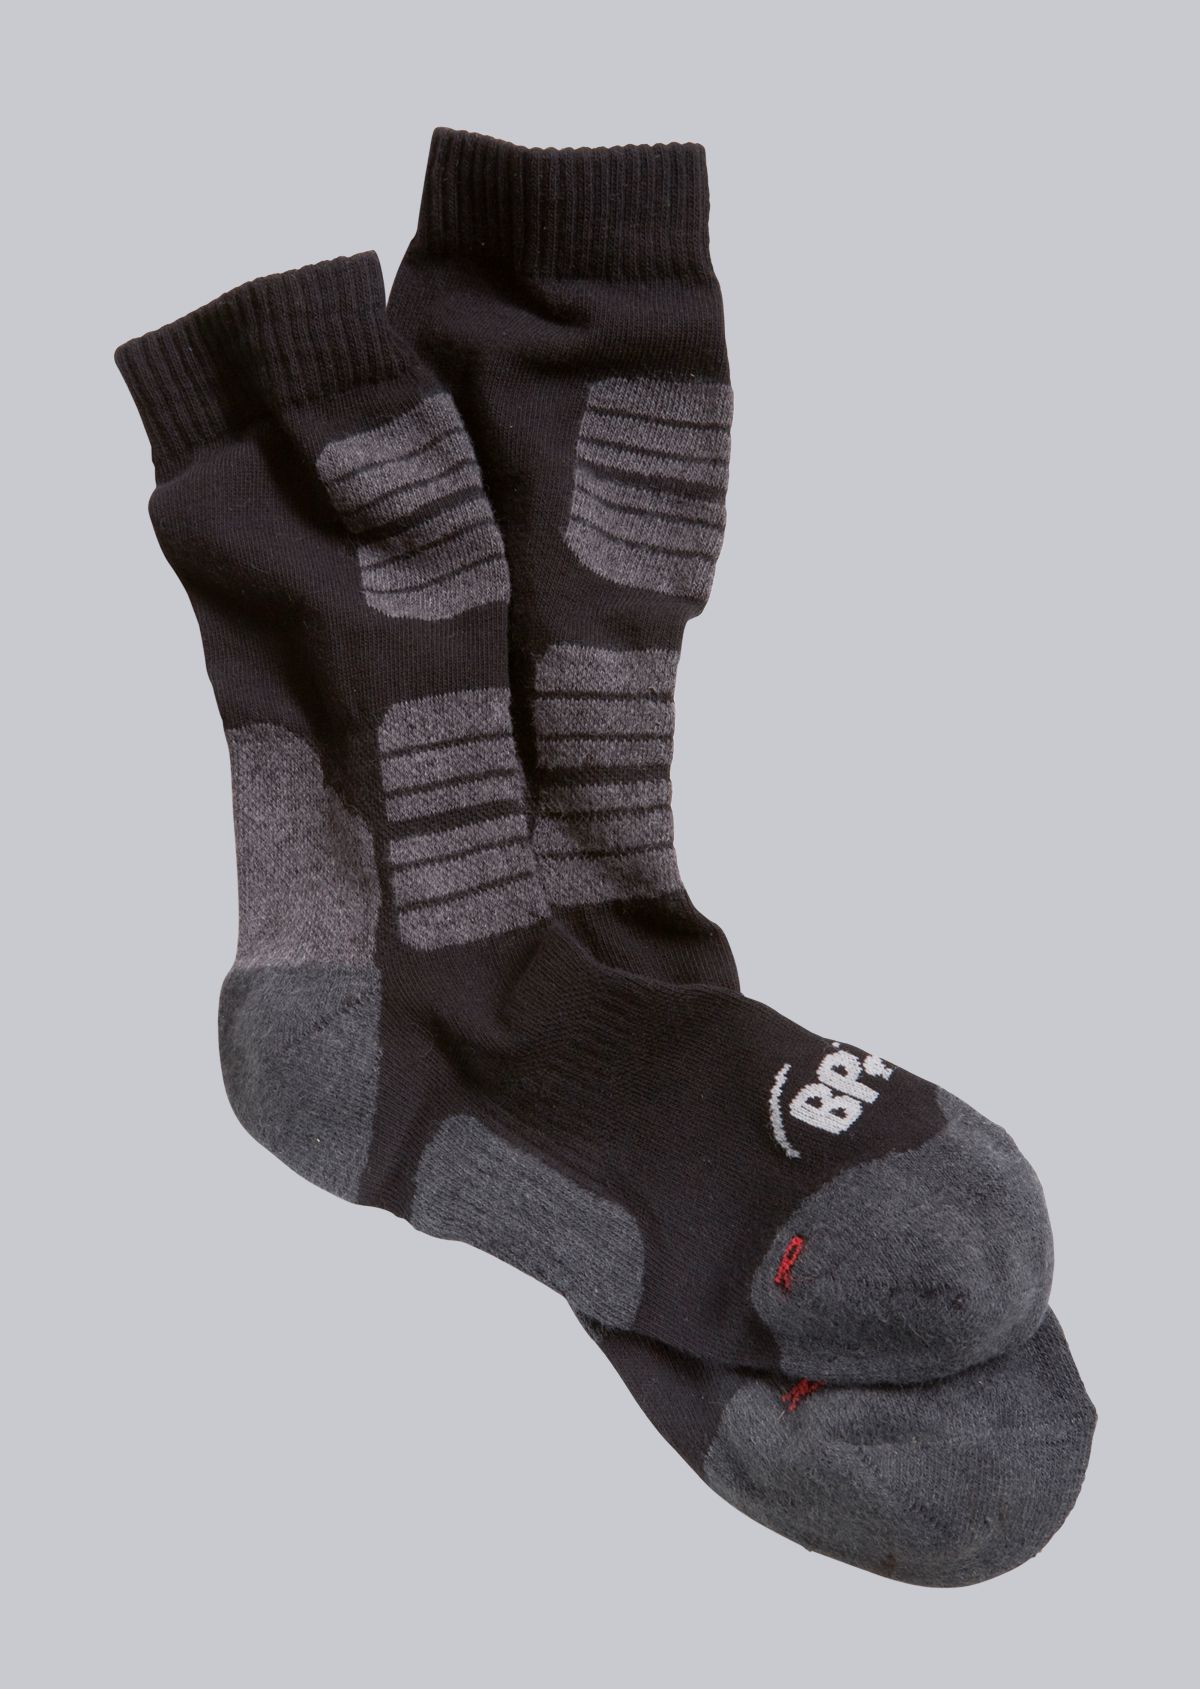 BP® Worker socks